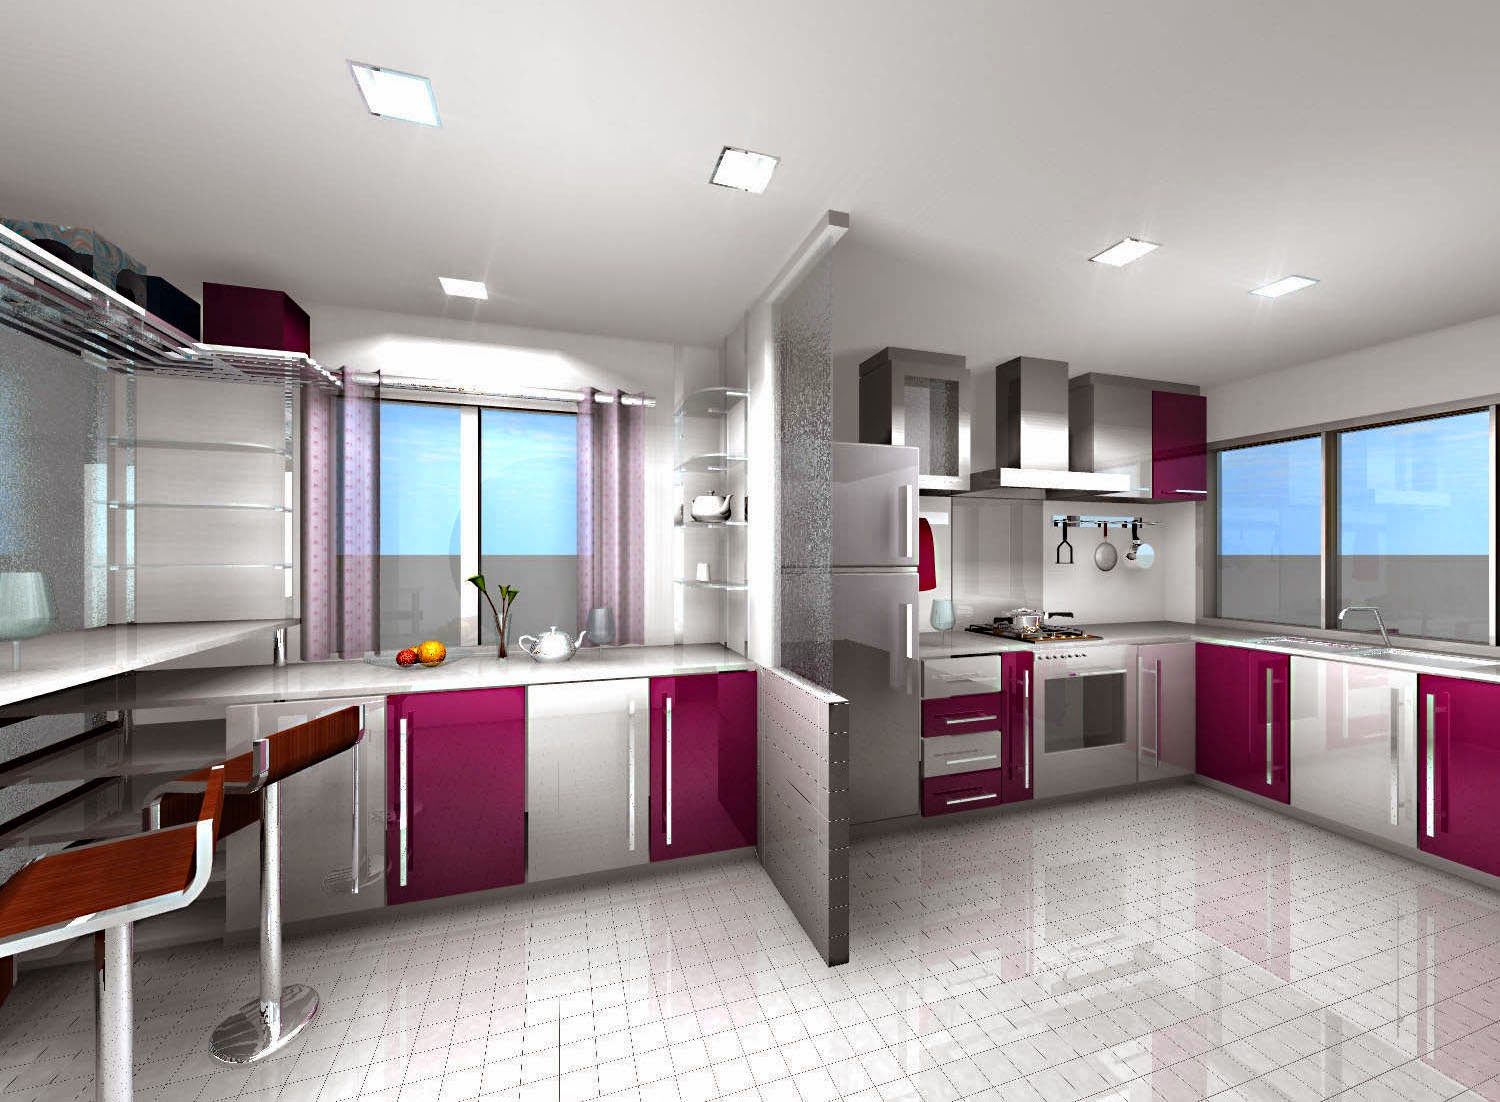 Kitchen Design Colors